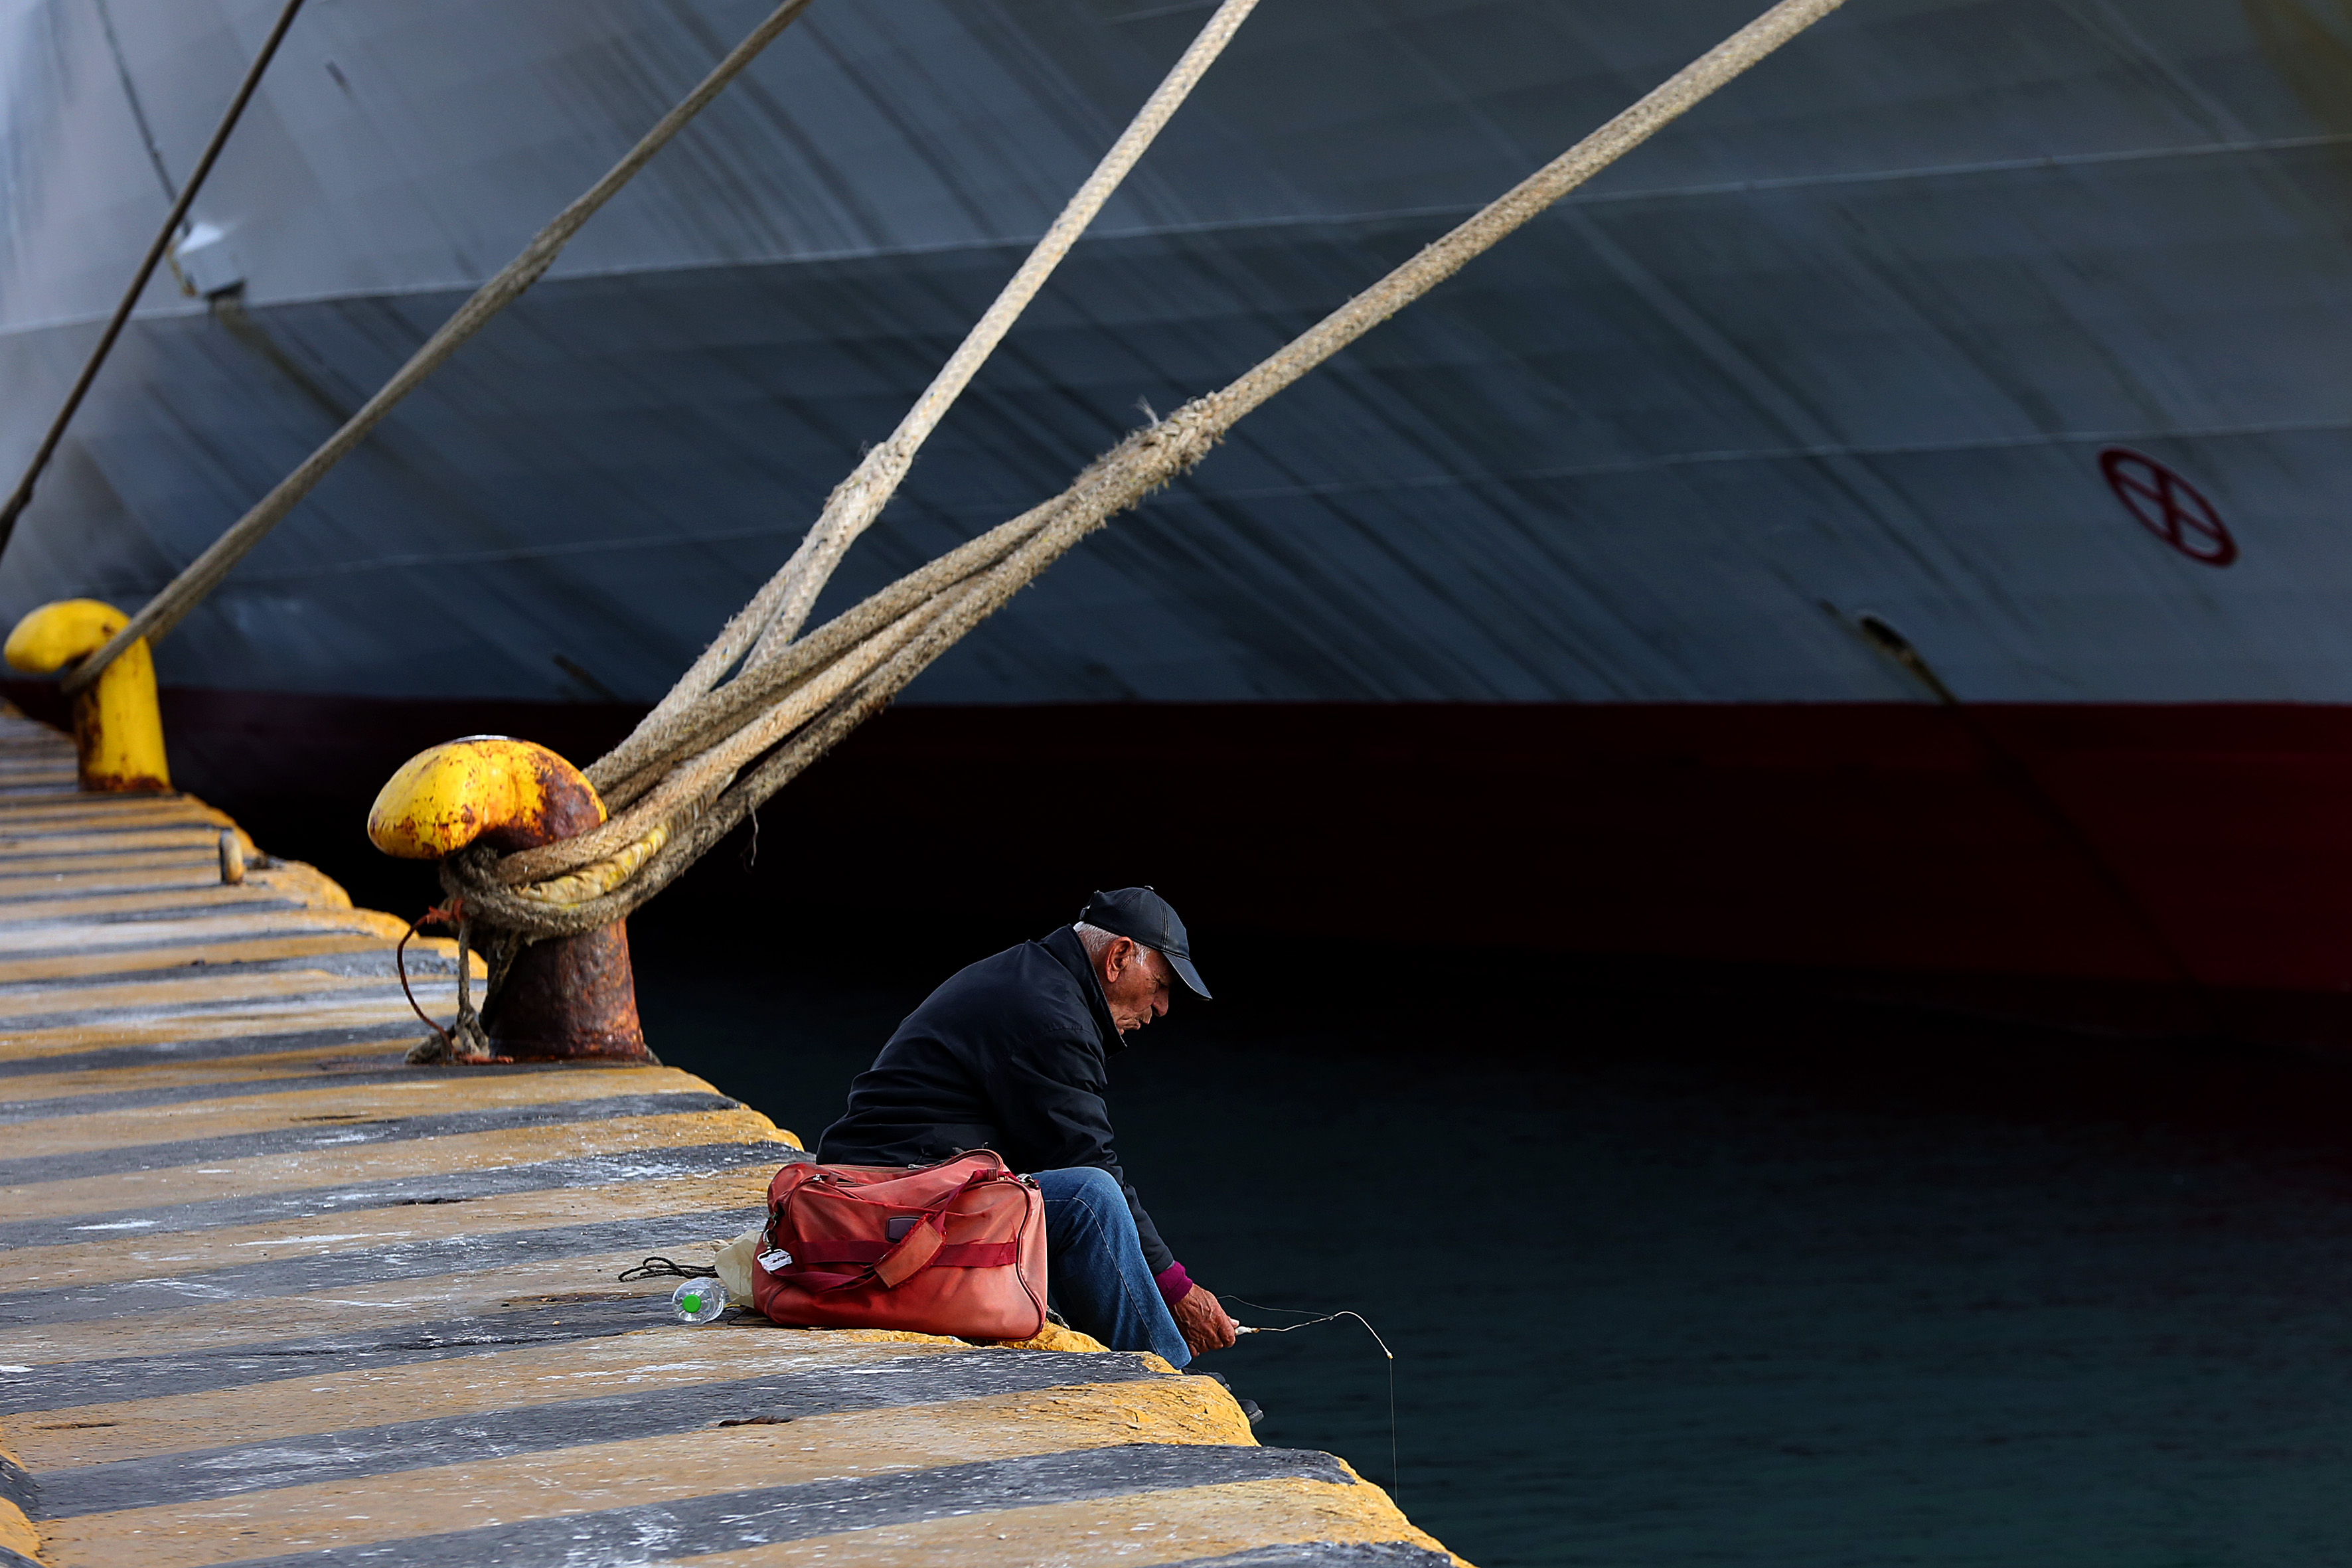 Δεμένα τα πλοία την Παρασκευή σε Κέρκυρα και Ηγουμενίτσα